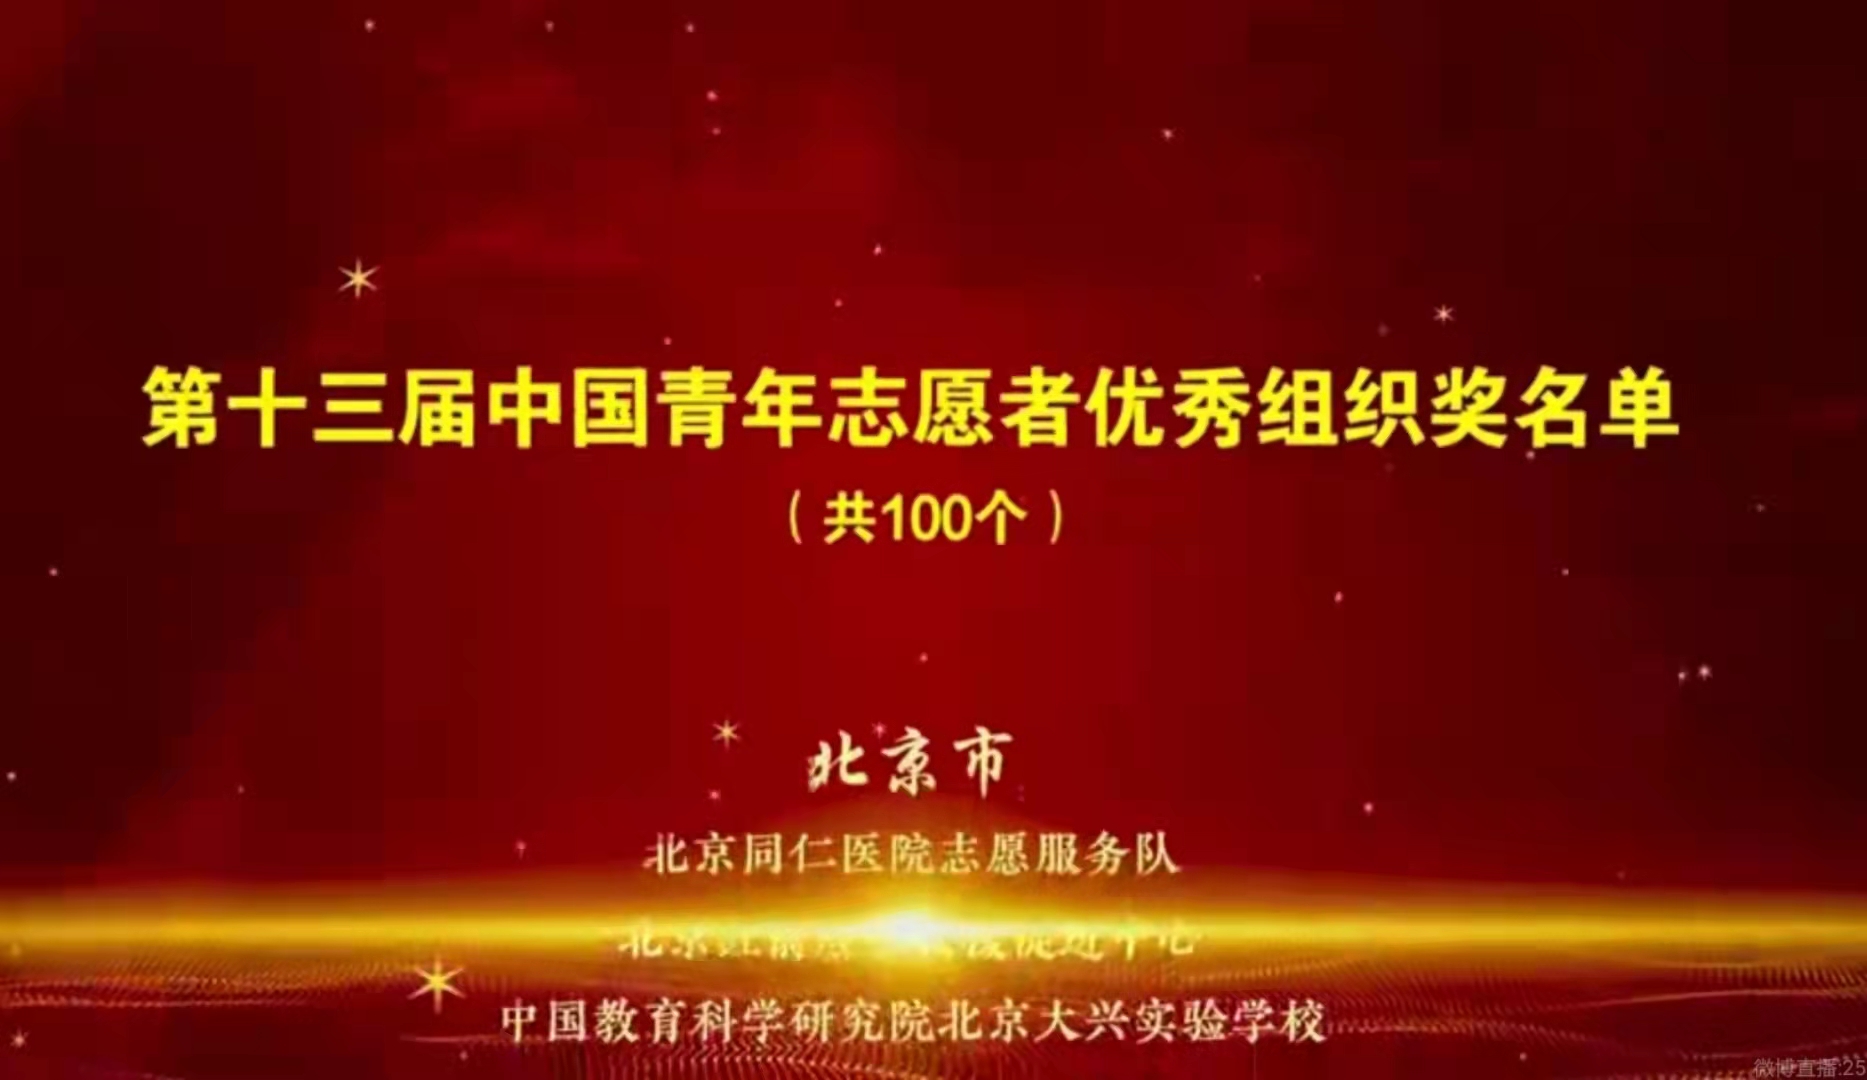 西南民族大学“格桑花”研究生支教团荣获第十三届中国青年志愿者优秀组织奖